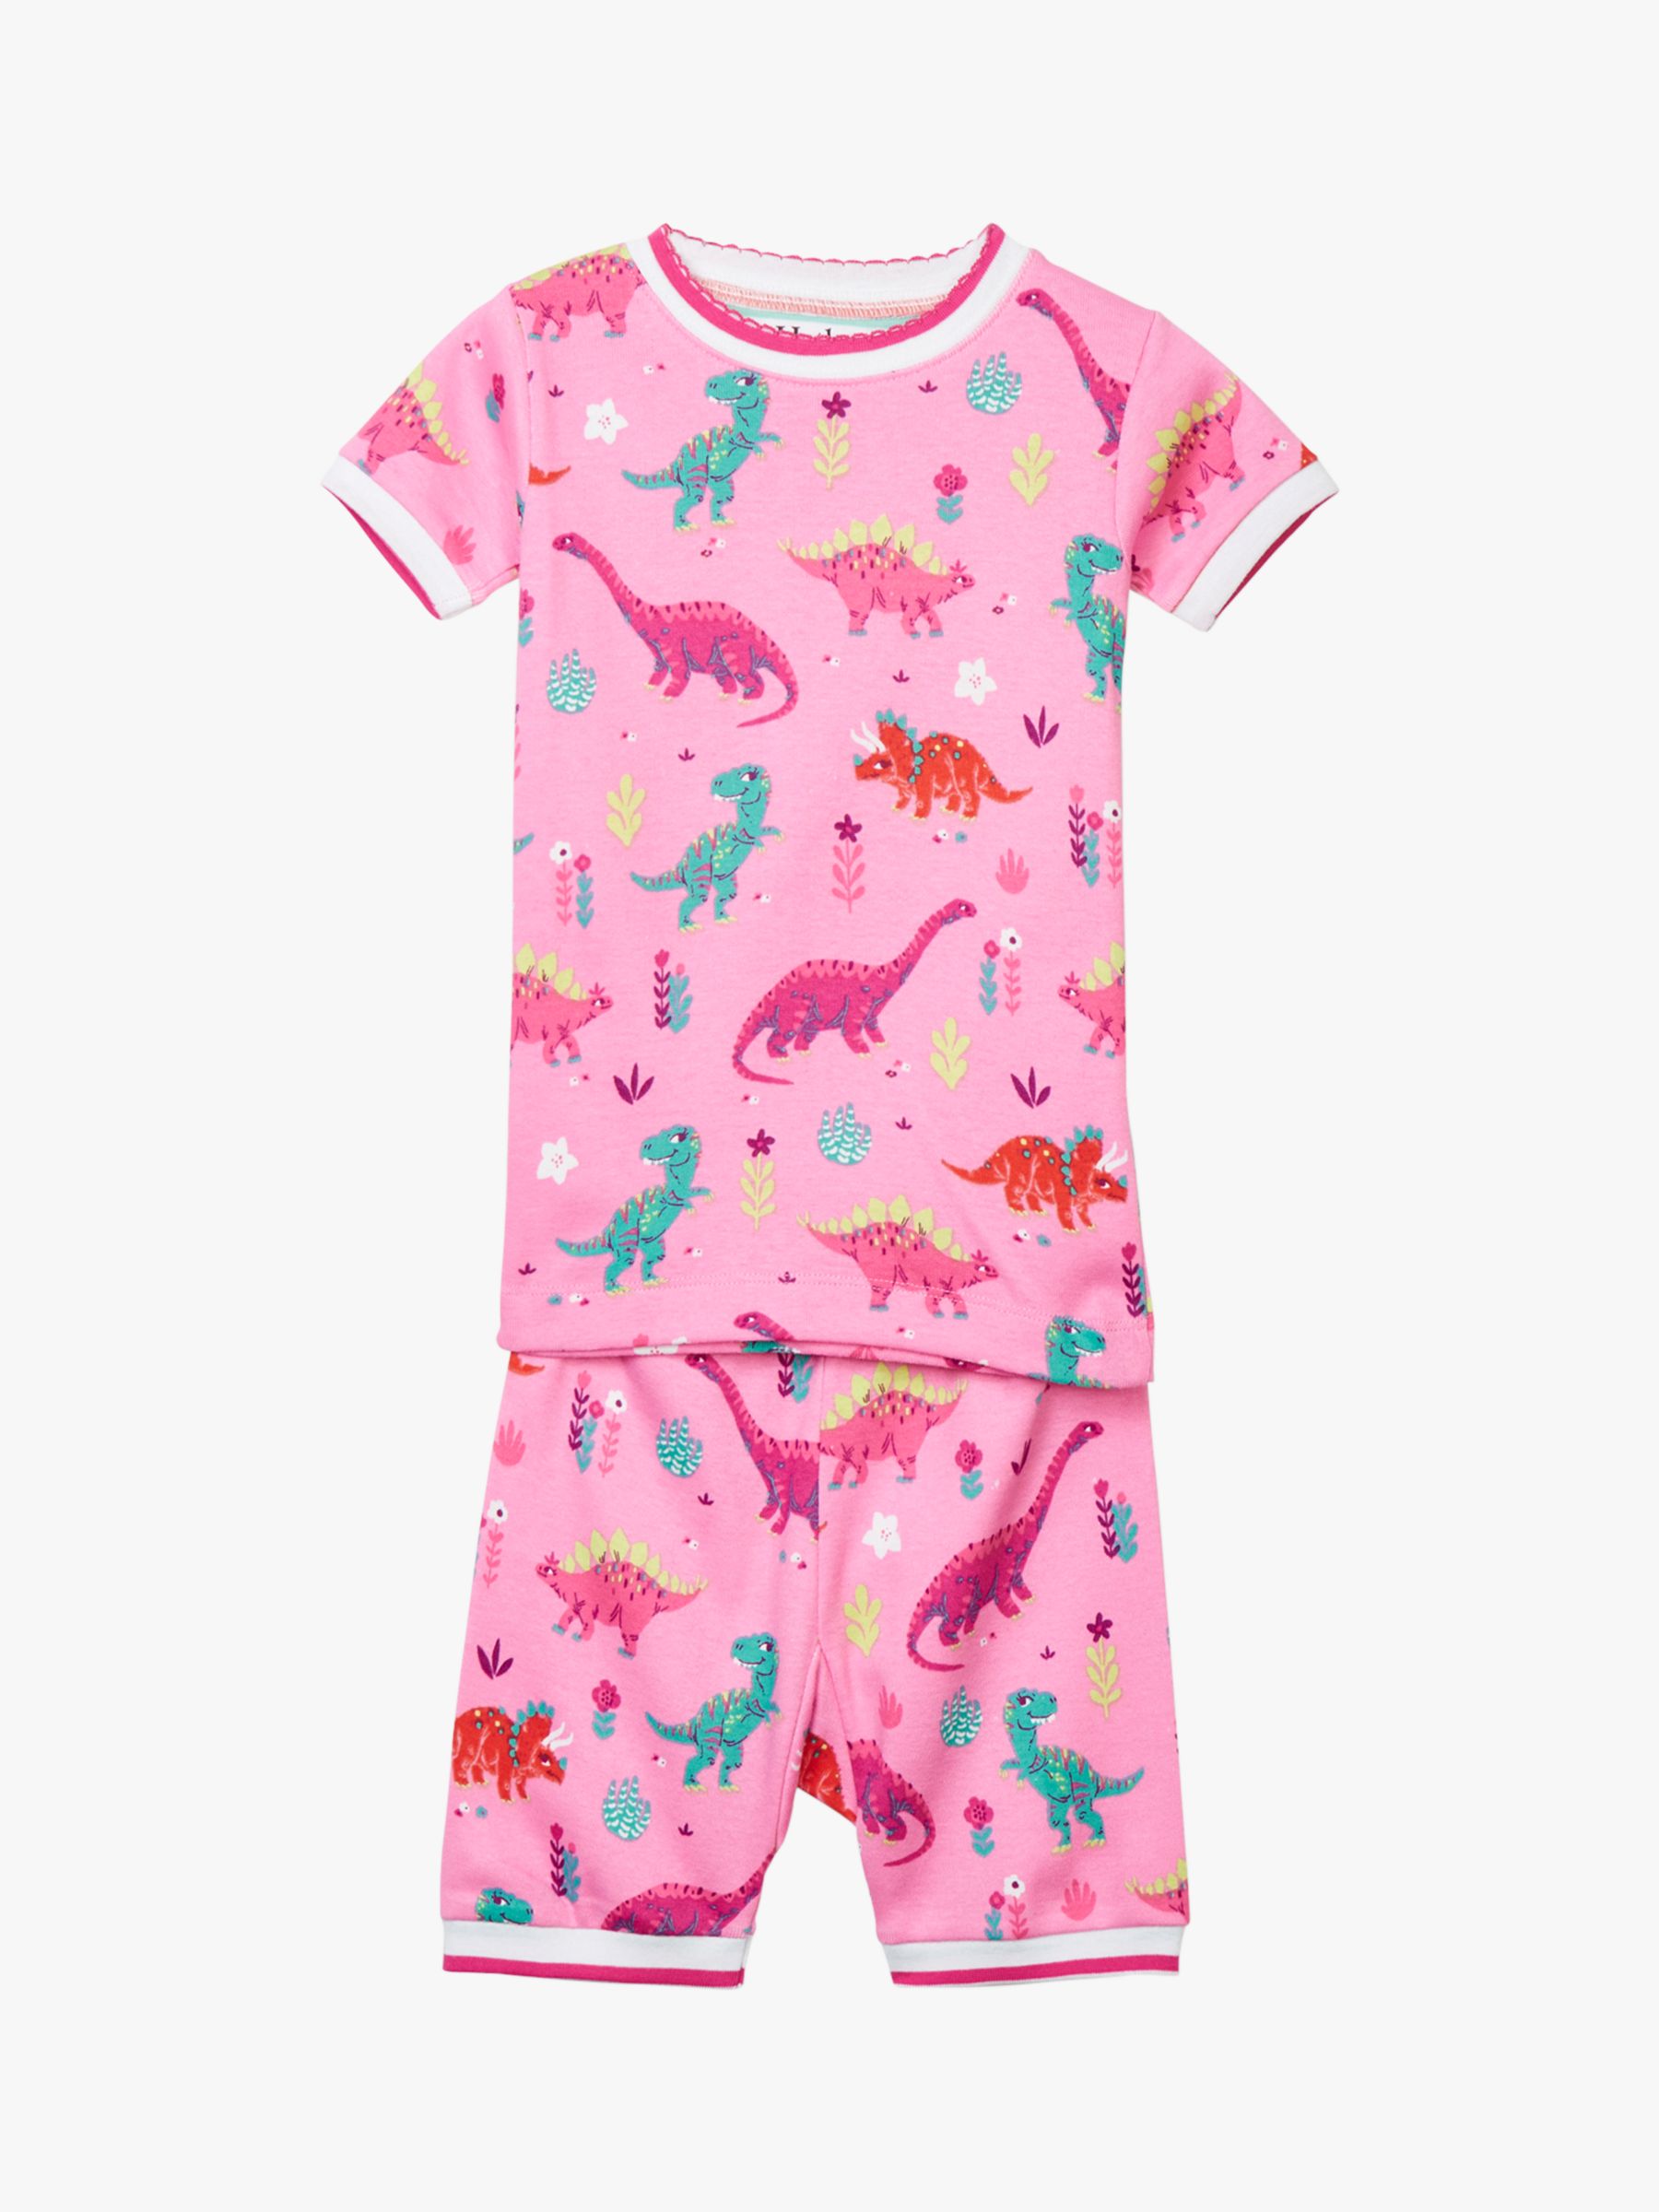 Hatley Girls' Dinosaur Organic Cotton Short Pyjamas, Pink at John Lewis ...